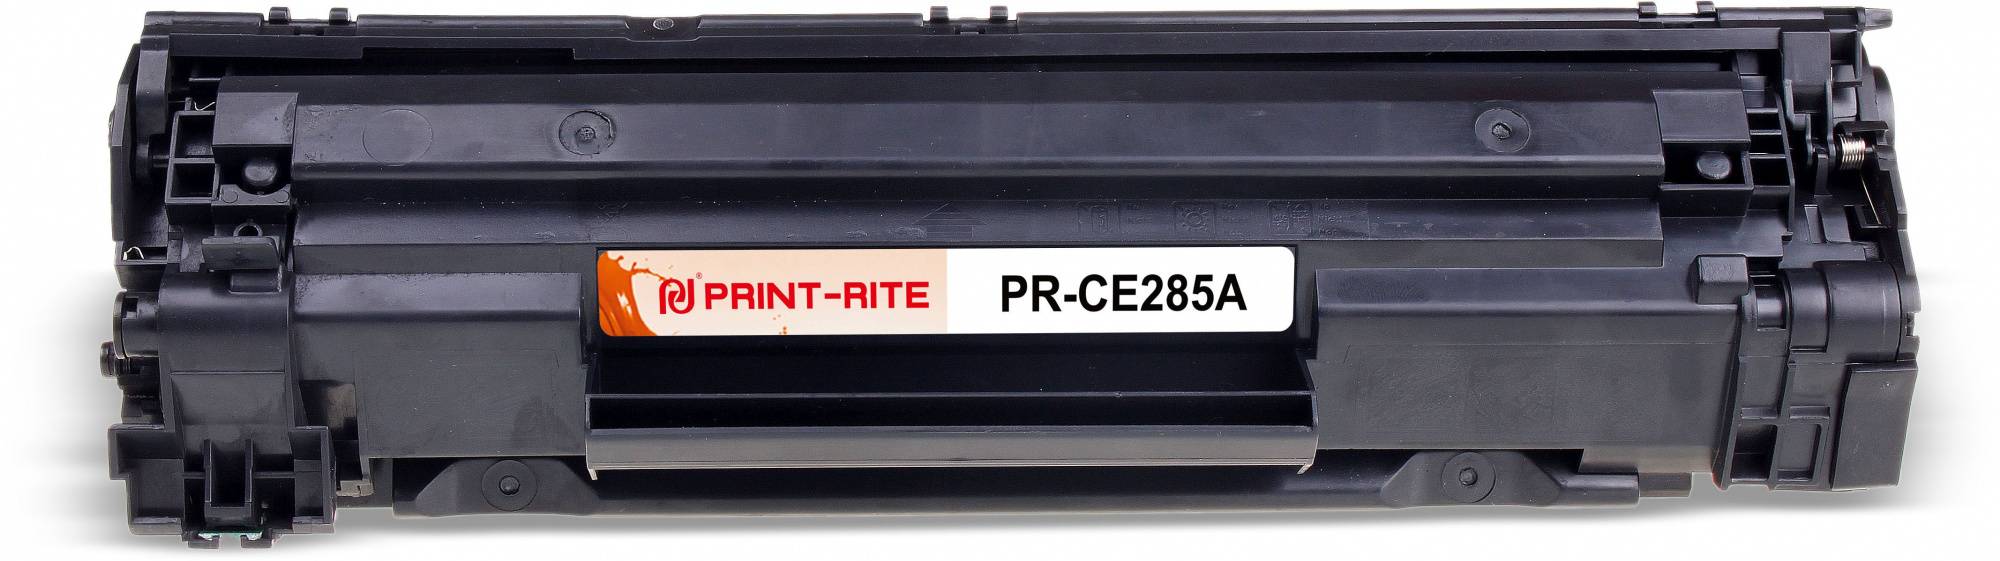 Картридж Print-Rite TFH899BPU1J1 CE285A черный (pr-ce285a)